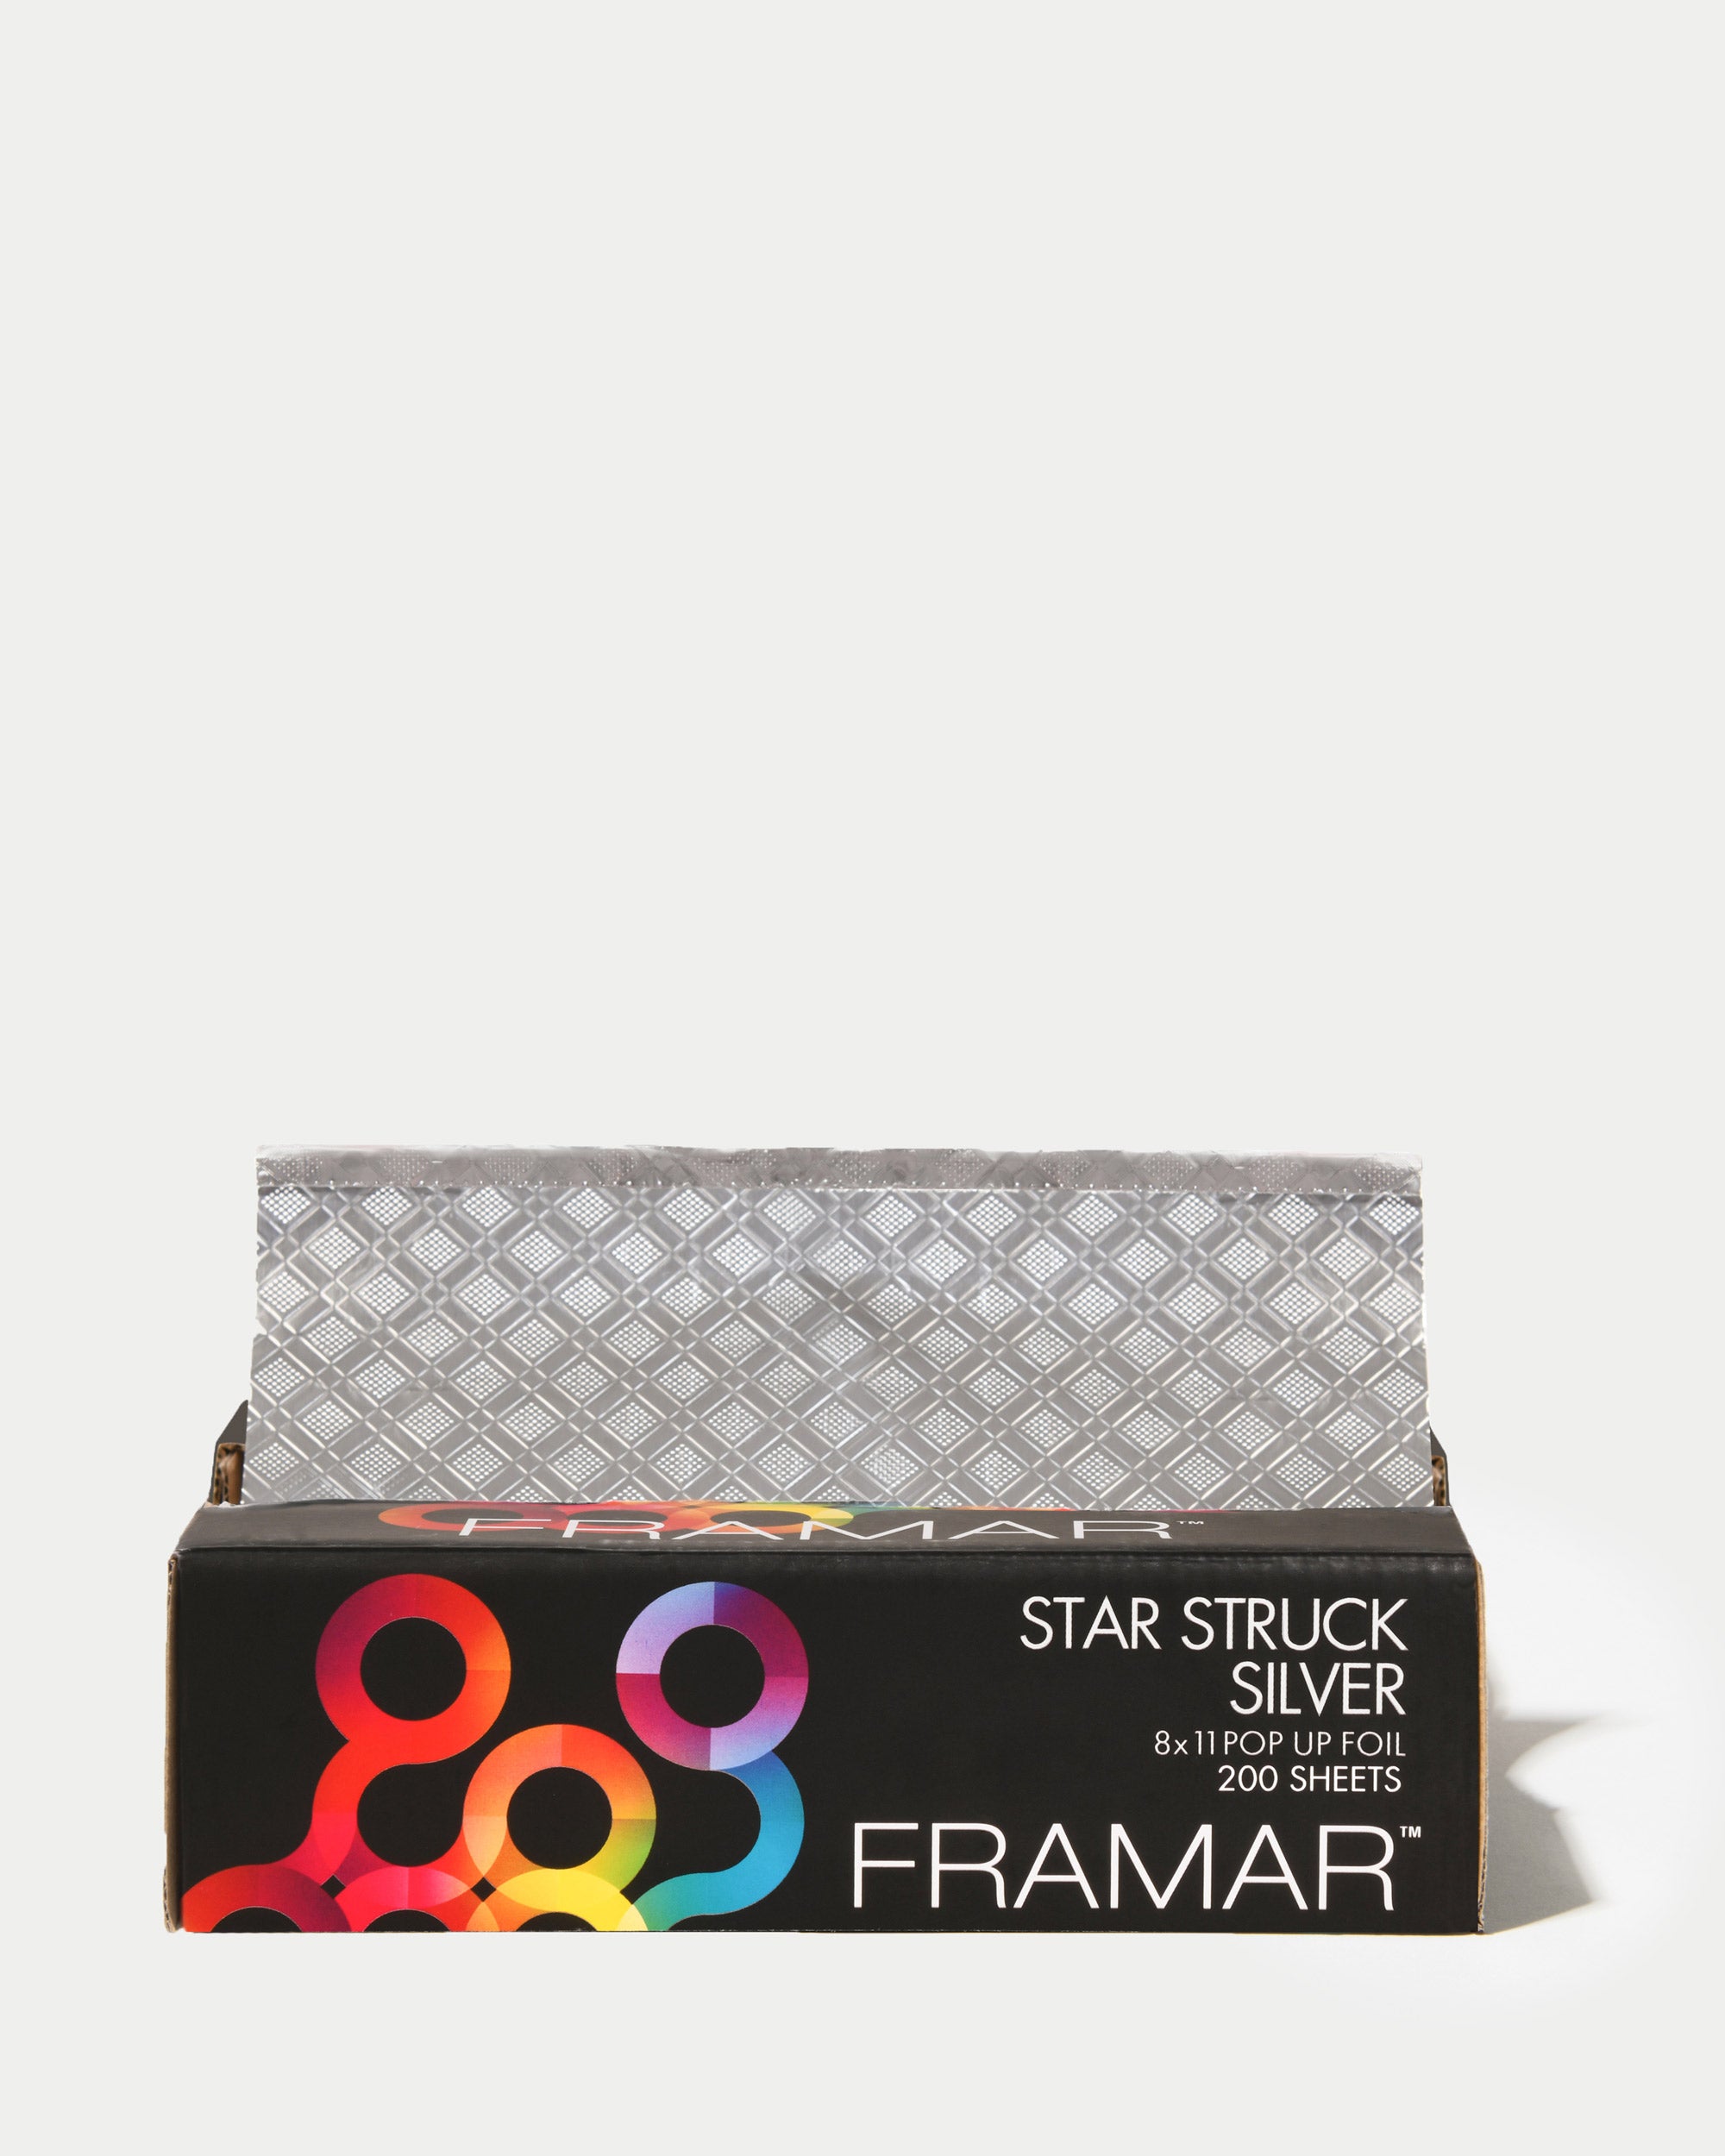 Framar Foil It Roll - Smooth Heavy - Star Struck Silver 5 X 280 Feet Roll  (46101)